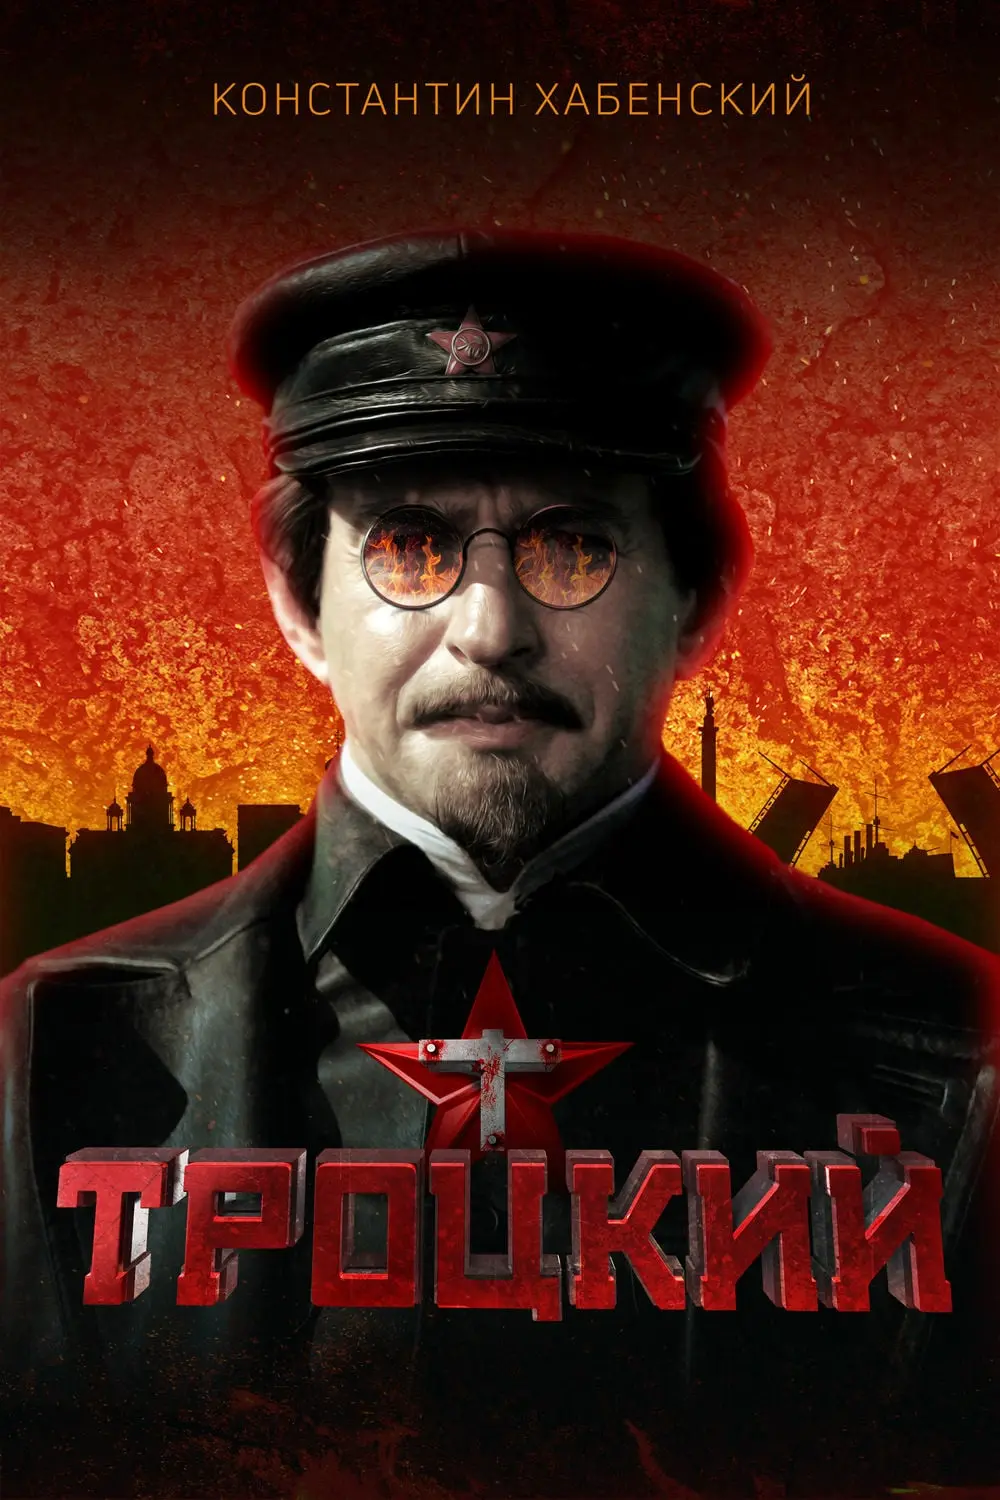 Trotsky_peliplat